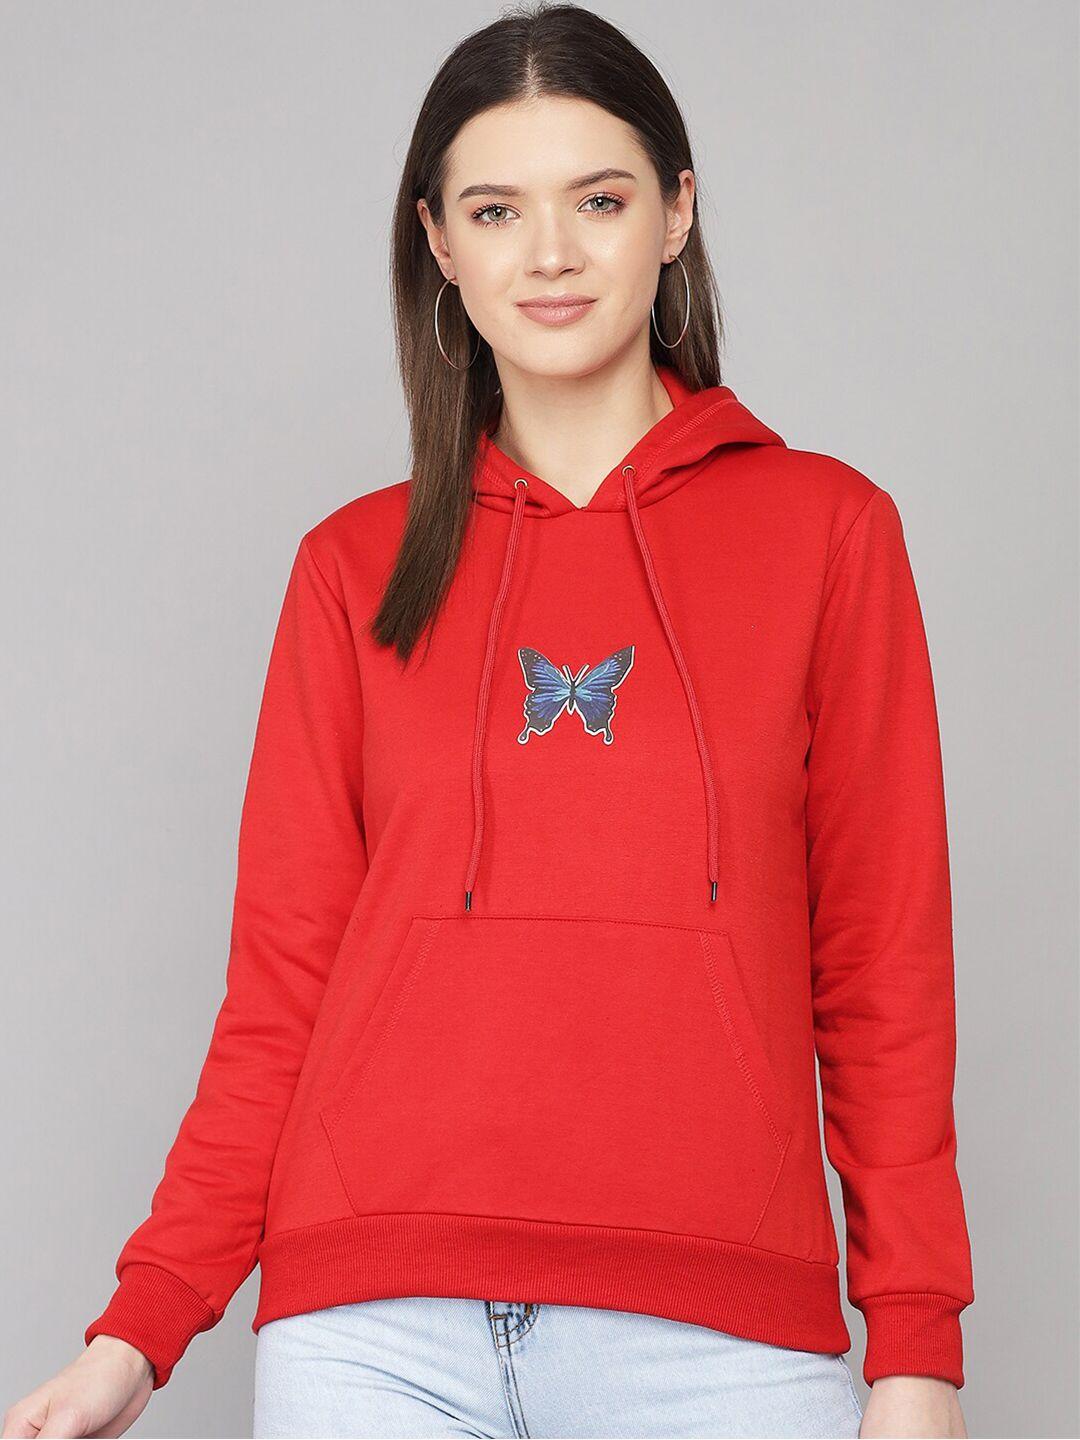 kotty-women-red-printed-hooded-sweatshirt